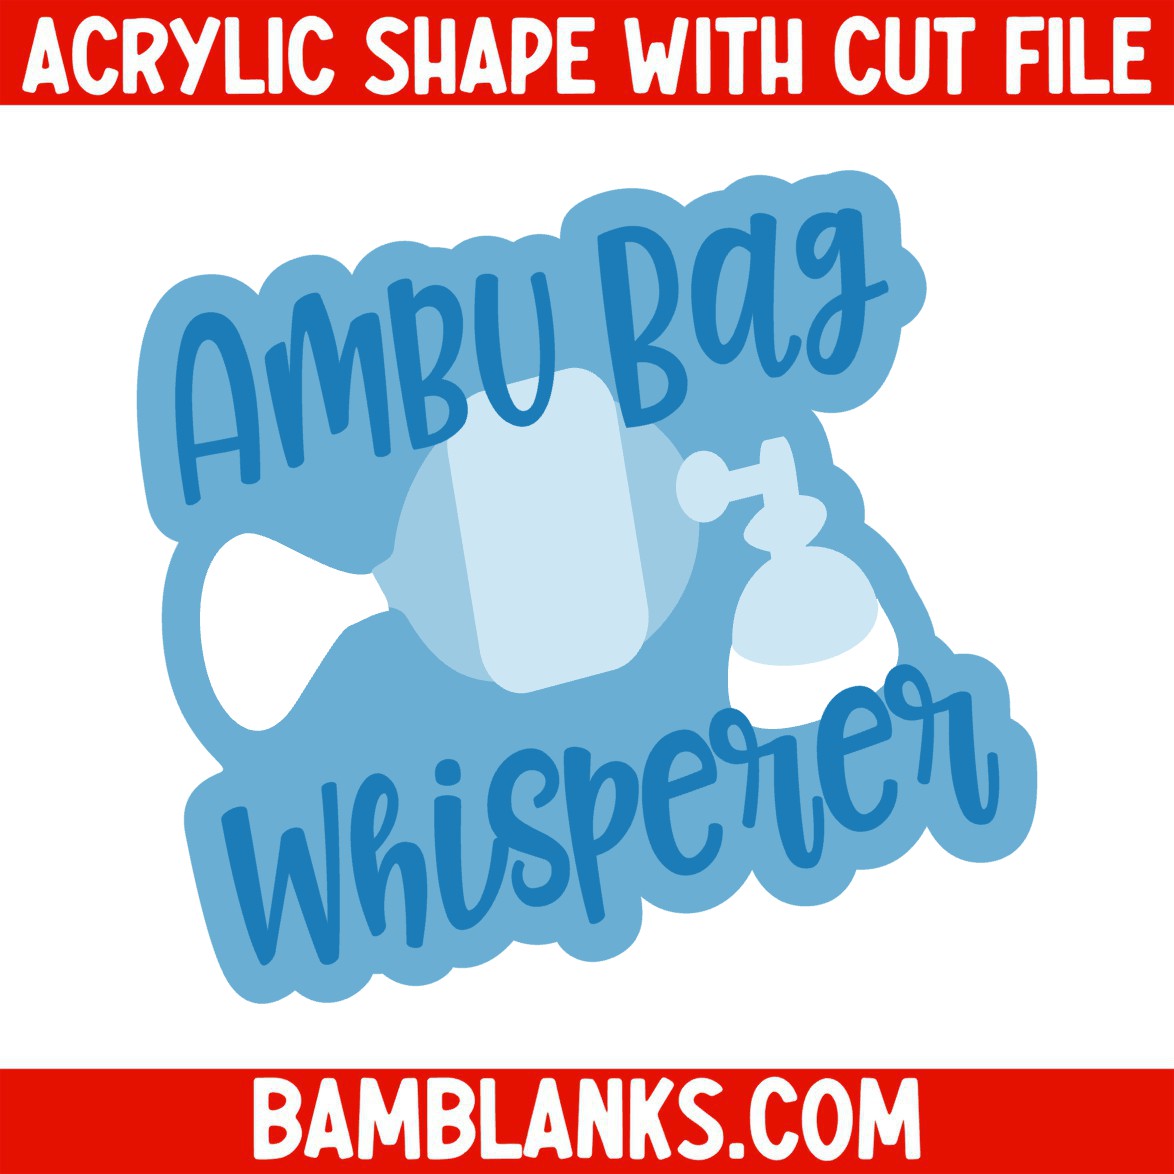 Ambu Bag Whisperer - Acrylic Shape #1299